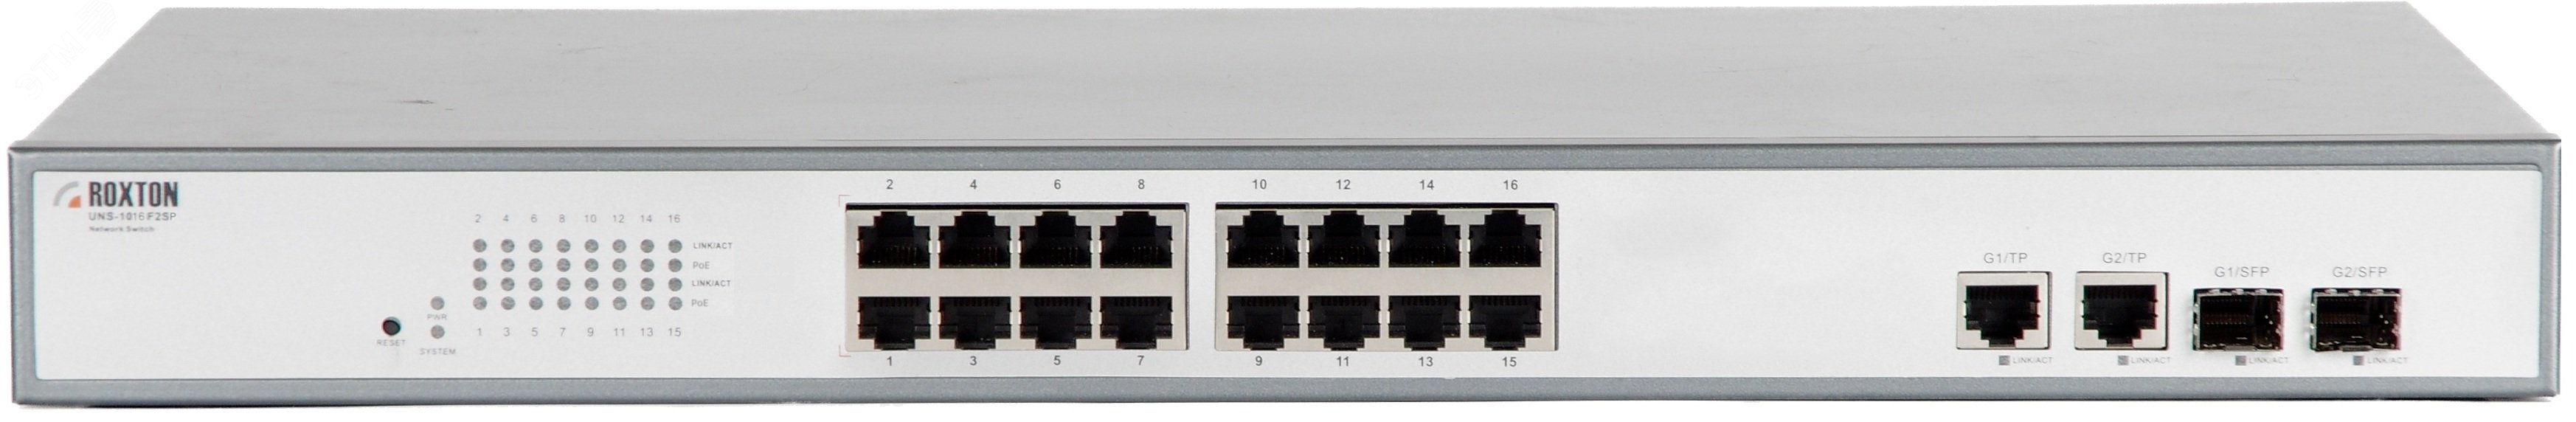 Коммутатор неуправляемый сетевой , порт 10/100 Мбит/с х 16, порт TF х 2, порт SFP х 2, PoE+(IEEE 802.3at-2009), 1U UNS-1016F2SP Roxton